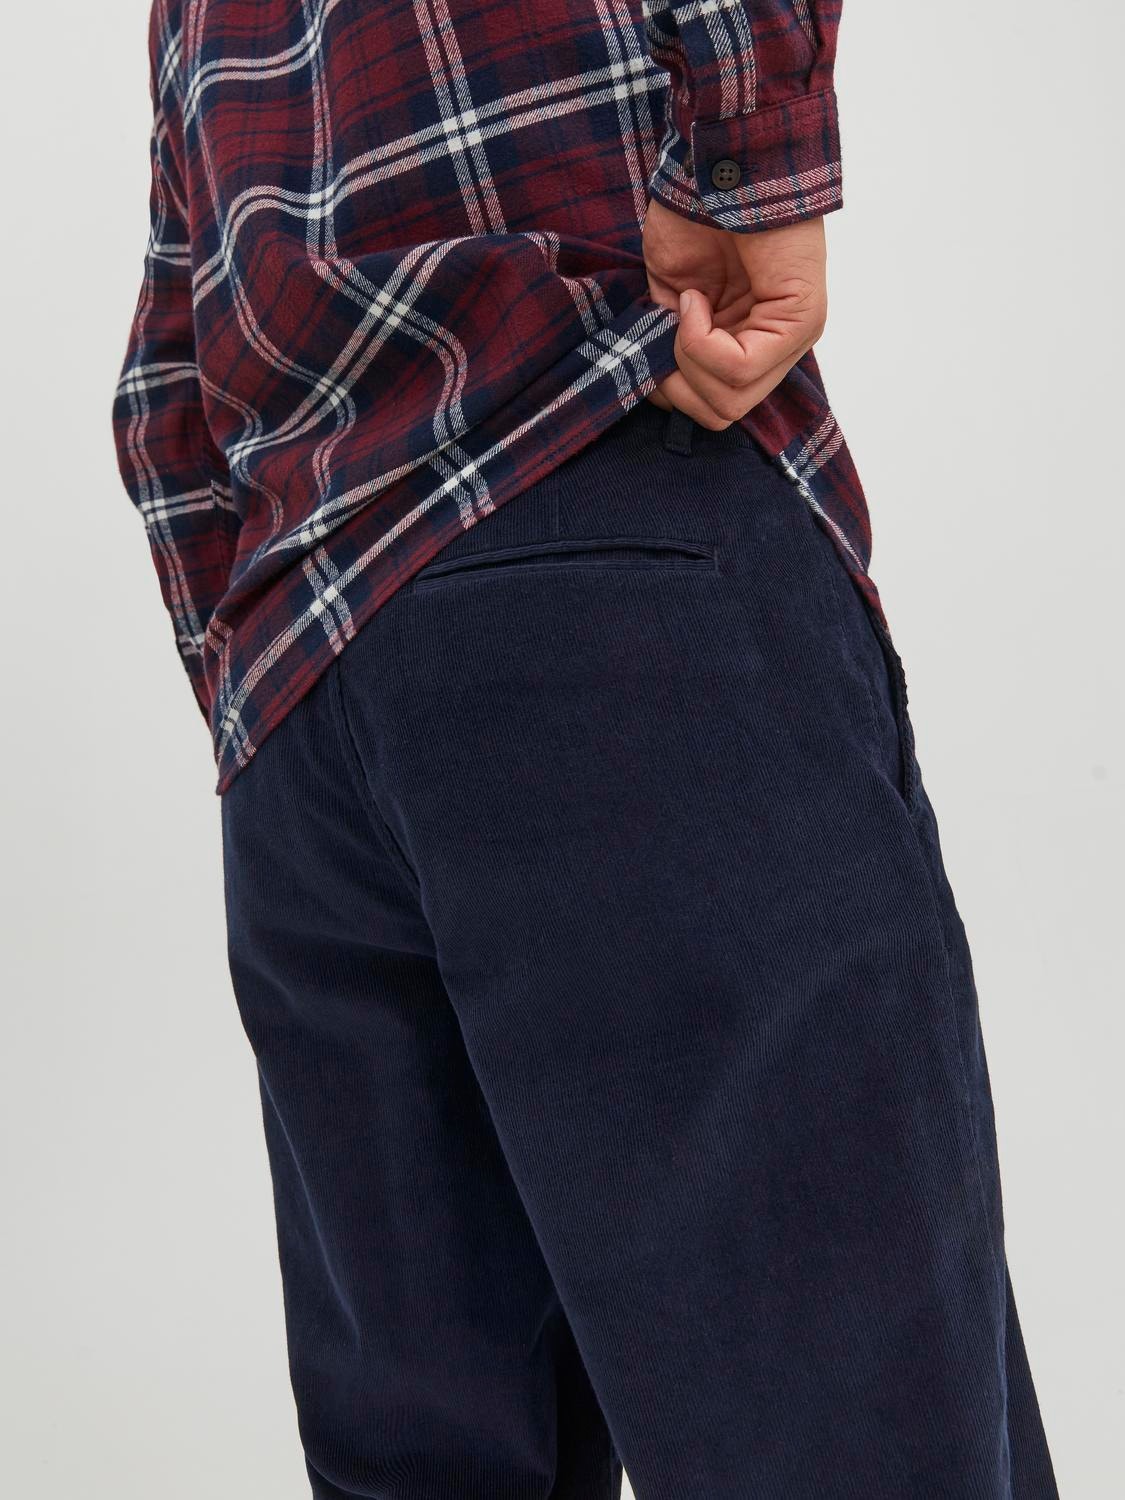 Jack & Jones Loose Fit Plátěné kalhoty Chino -Navy Blazer - 12237547